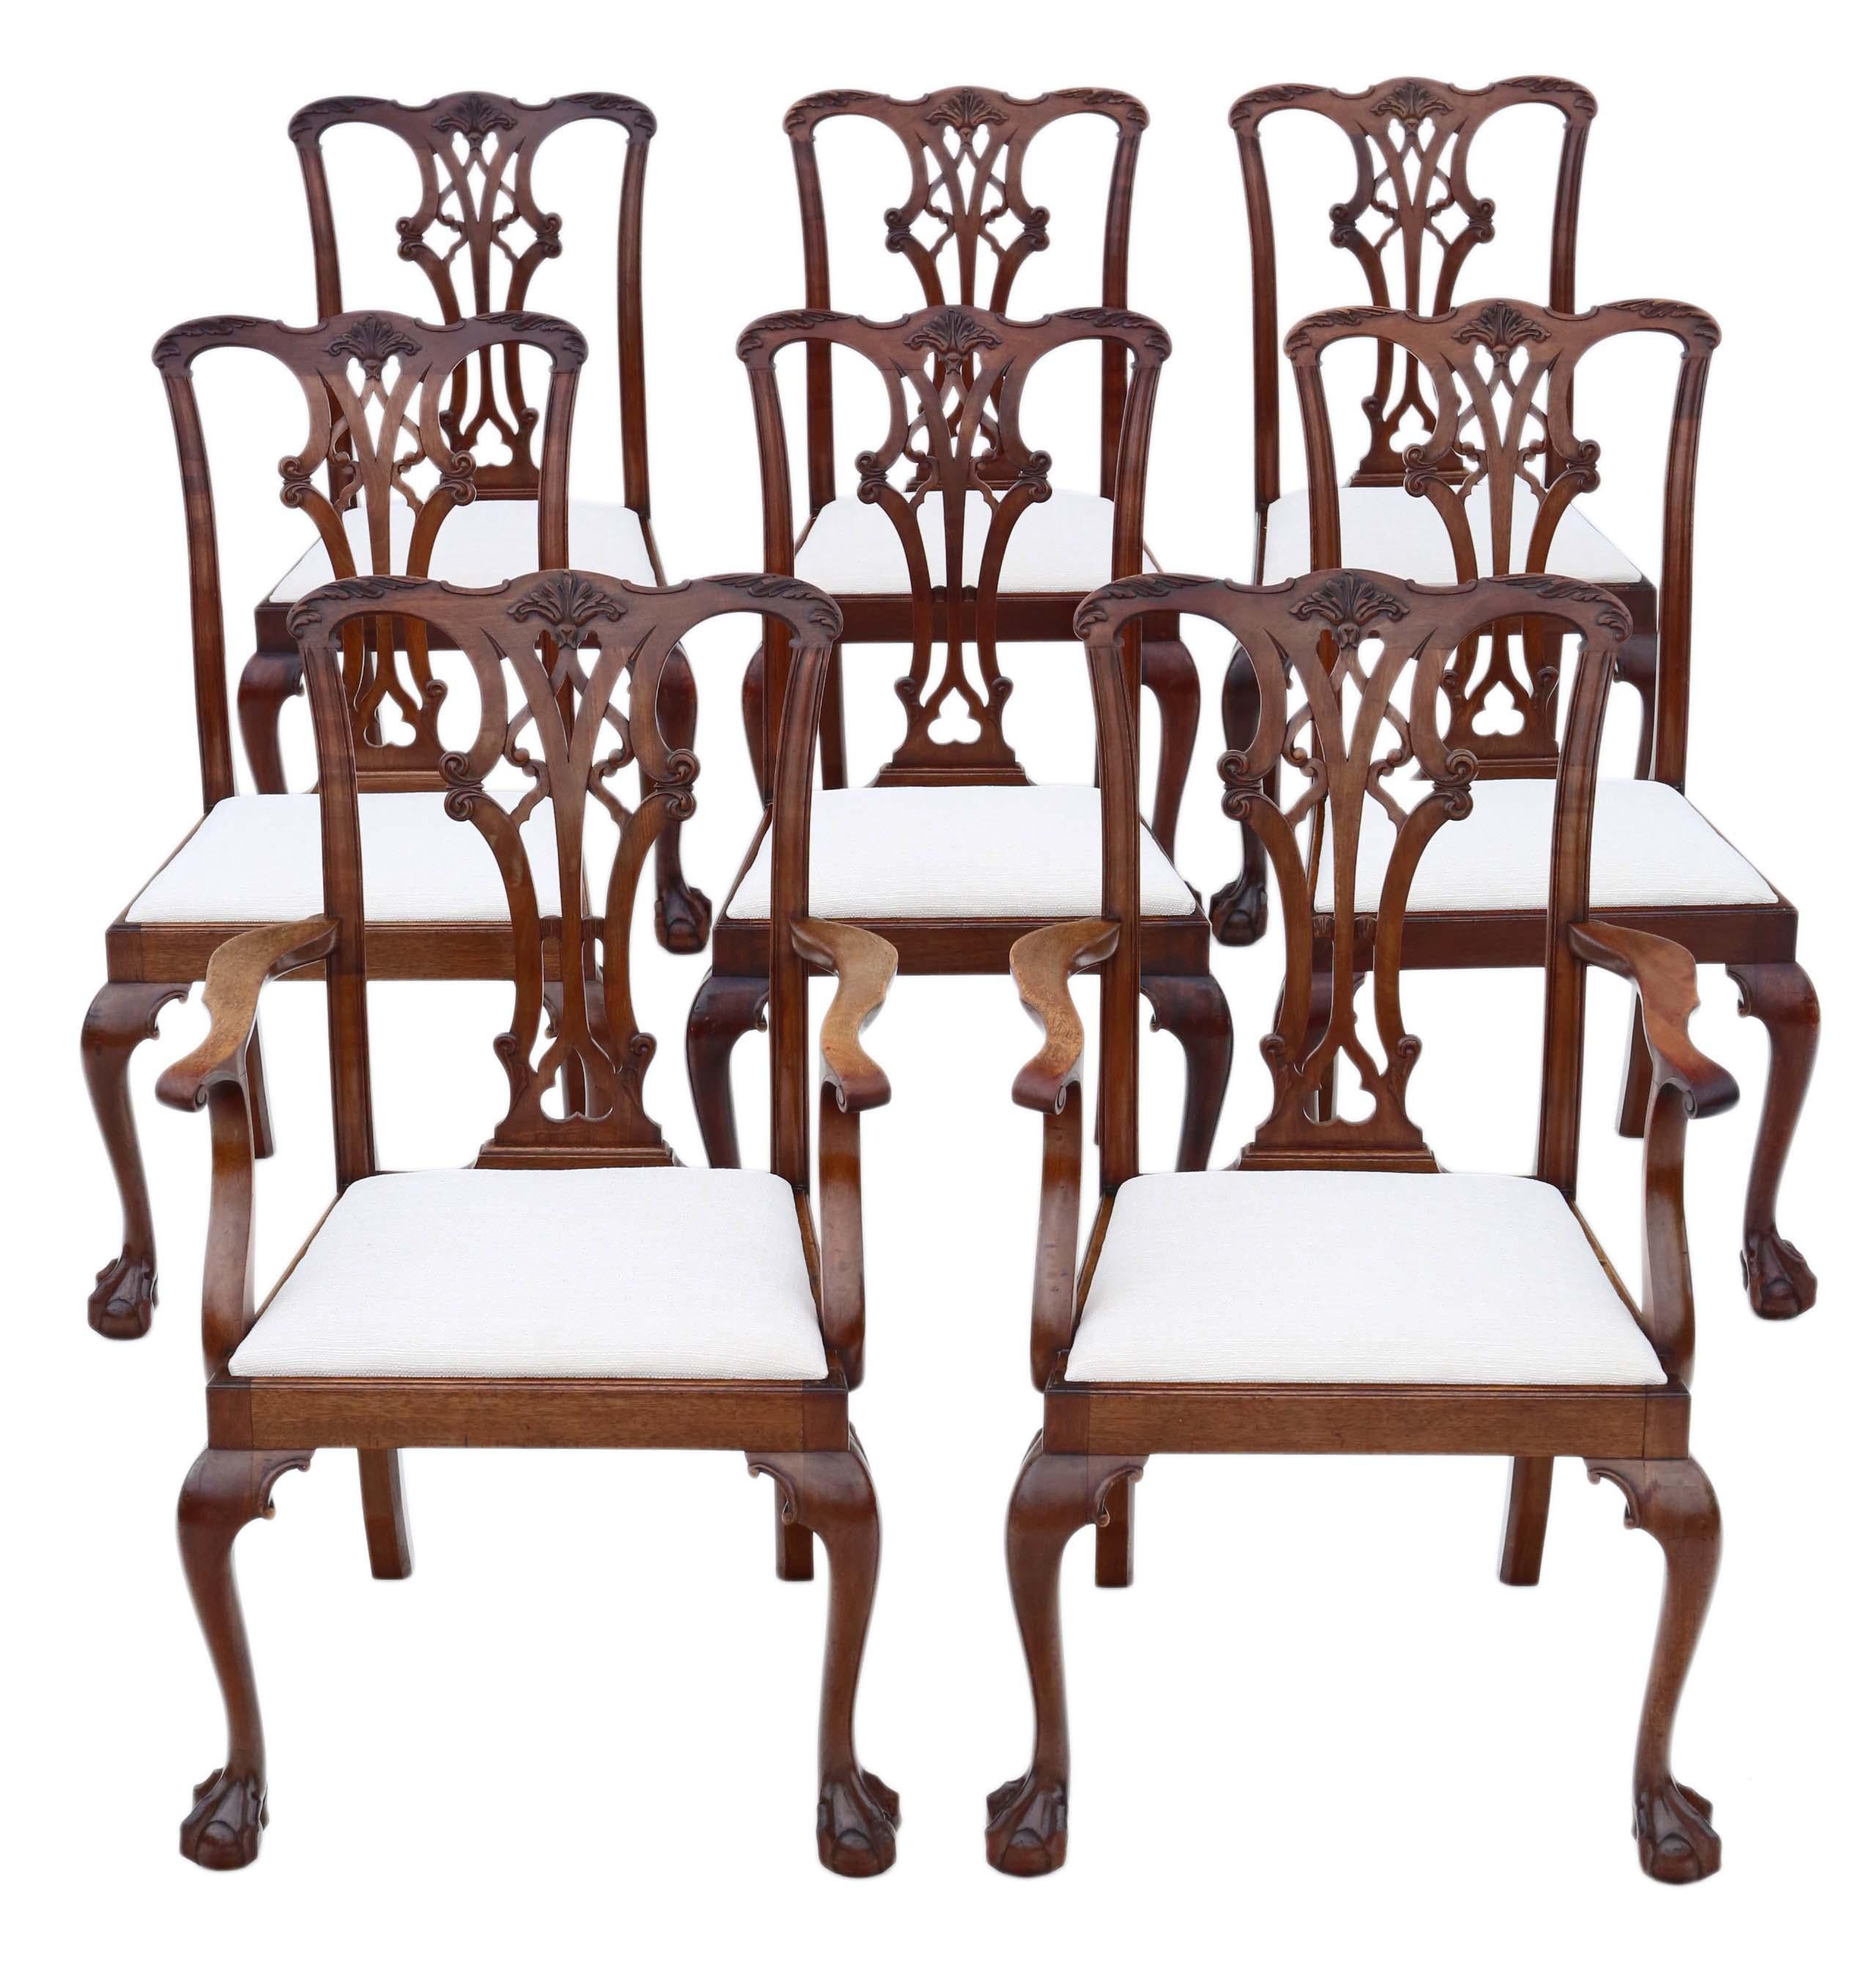 Découvrez le charme intemporel de cet ensemble ancien de 8 (6+2) chaises de salle à manger en acajou, incarnant le style néo-géorgien vers 1910. Ces chaises se caractérisent par une construction solide, sans joints lâches, et présentent un design